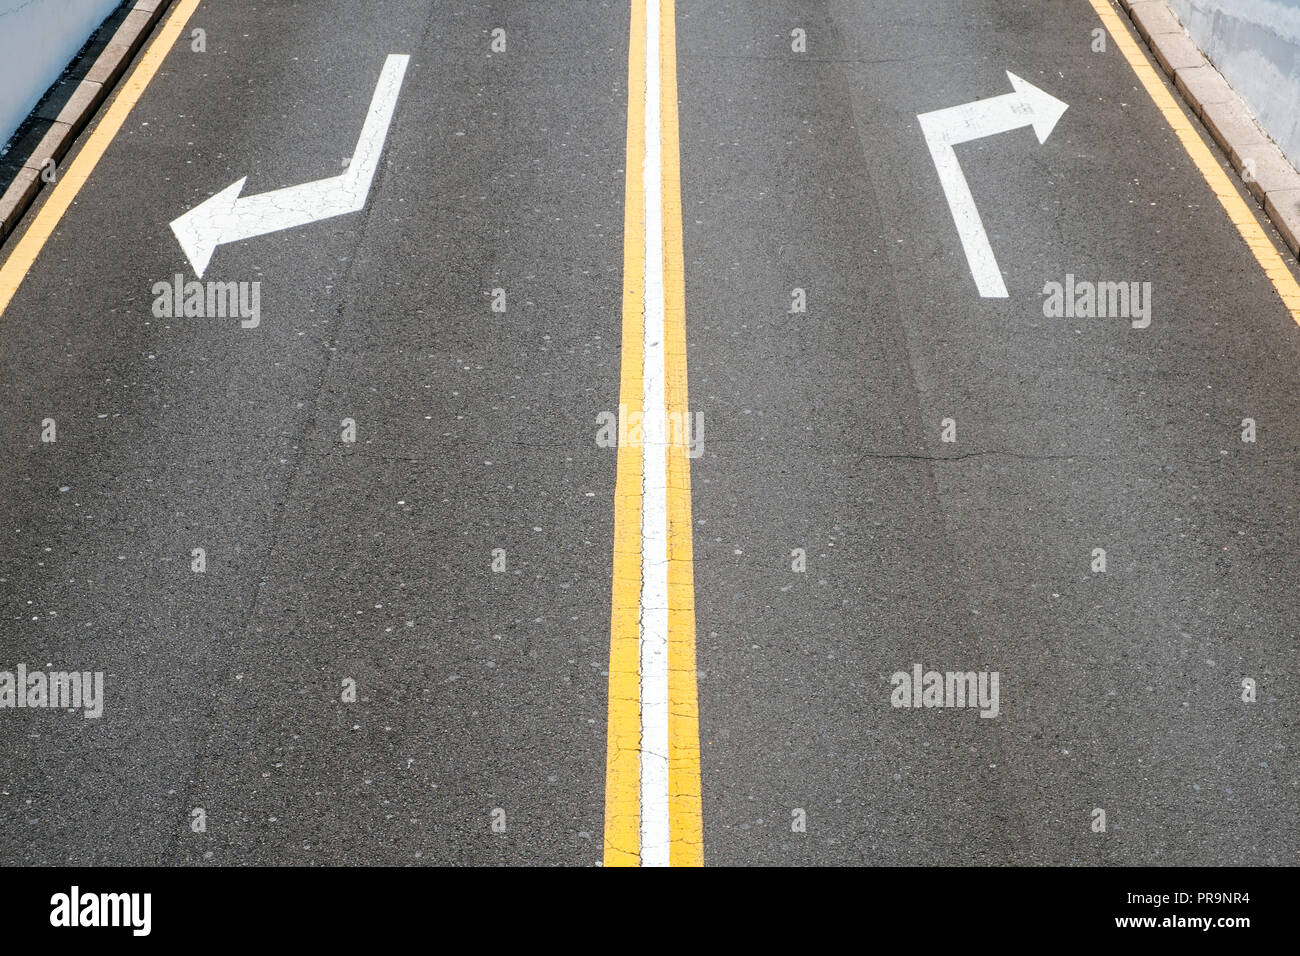 Sinistra / destra, le frecce del senso di marcia su strada asfaltata - Foto Stock